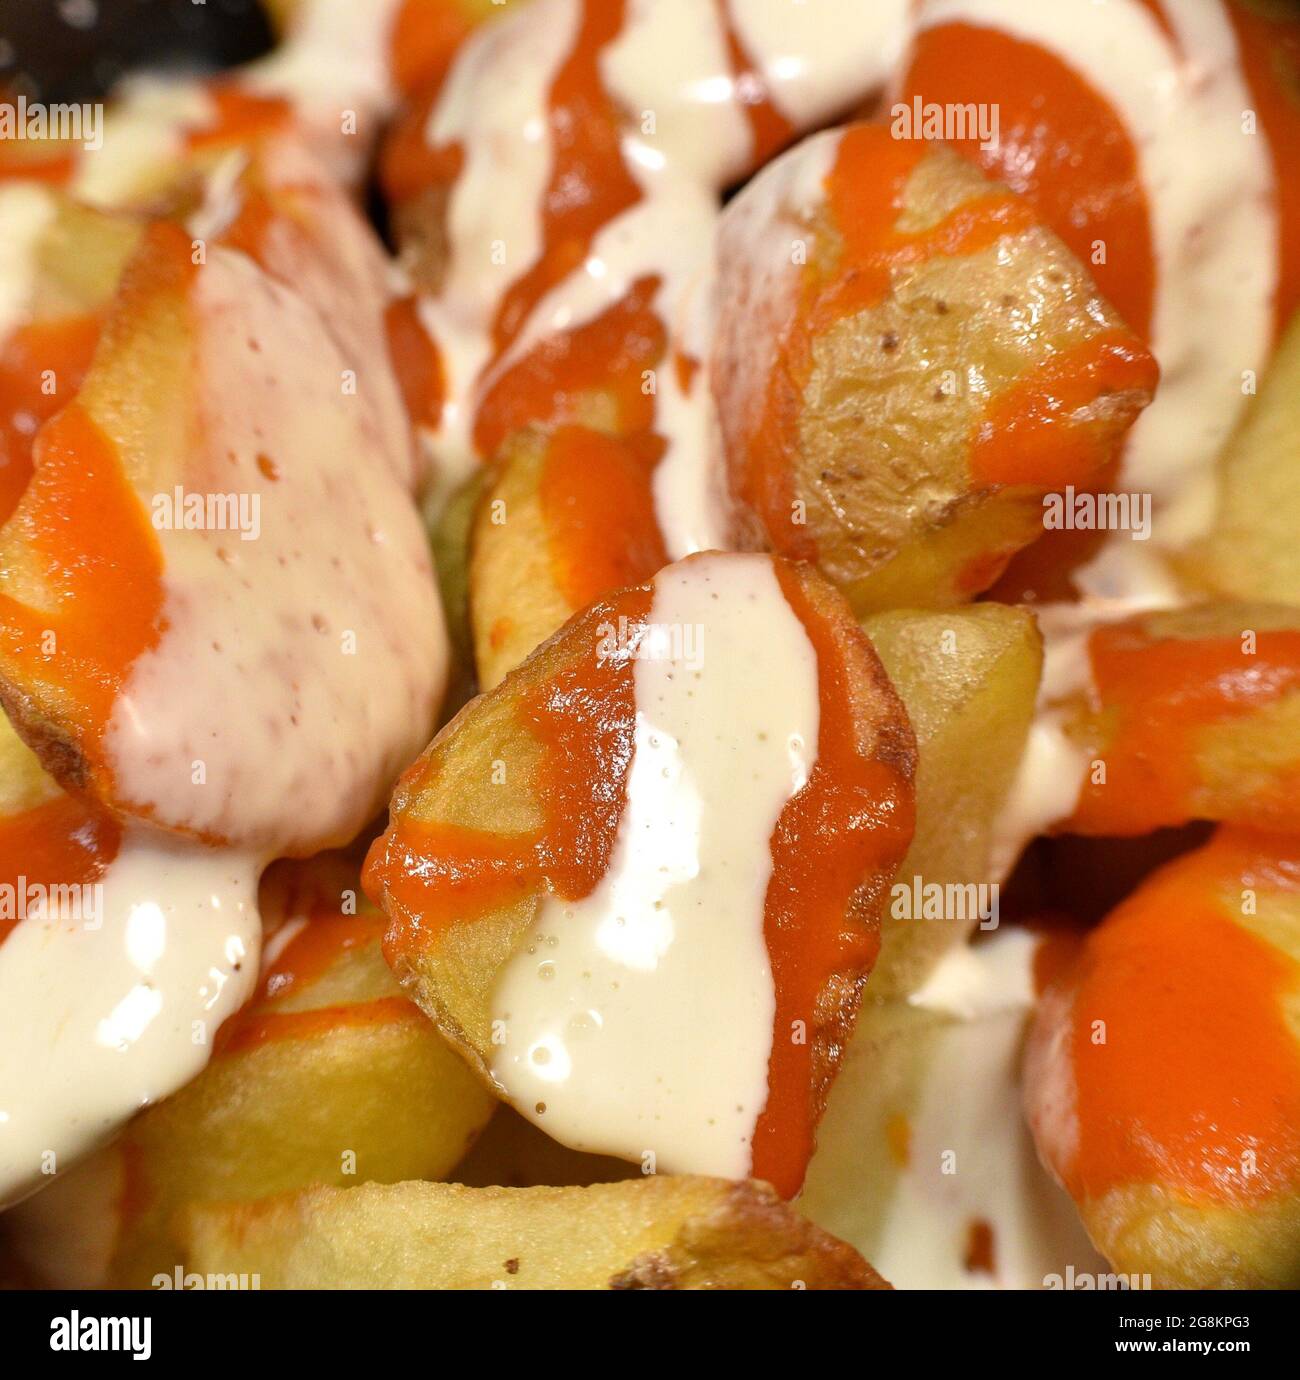 Détail macro des pommes de terre bravas, frites avec la peau, la mayonnaise et les sauces épicées aux tomates. Plat typique et traditionnel de la gastronomie espagnole. La Rioja, SP Banque D'Images